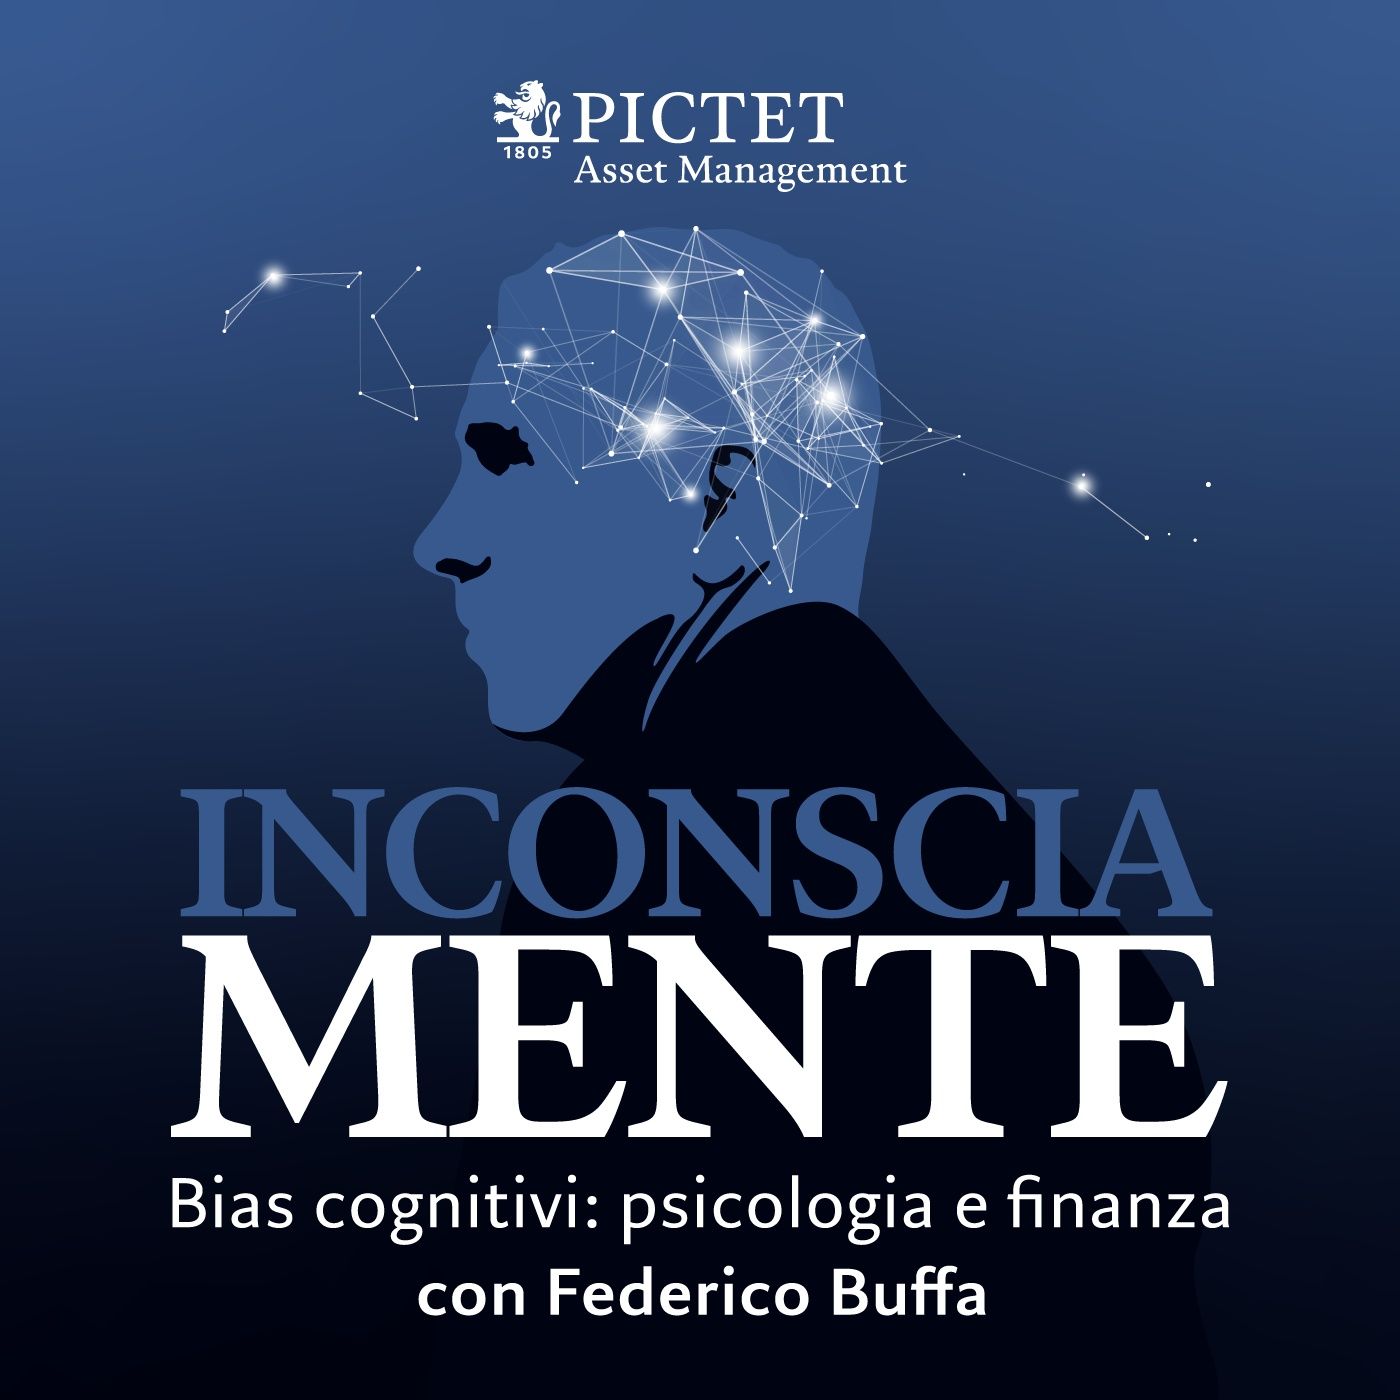 InconsciaMente – Bias cognitivi: psicologia e finanza con Federico Buffa